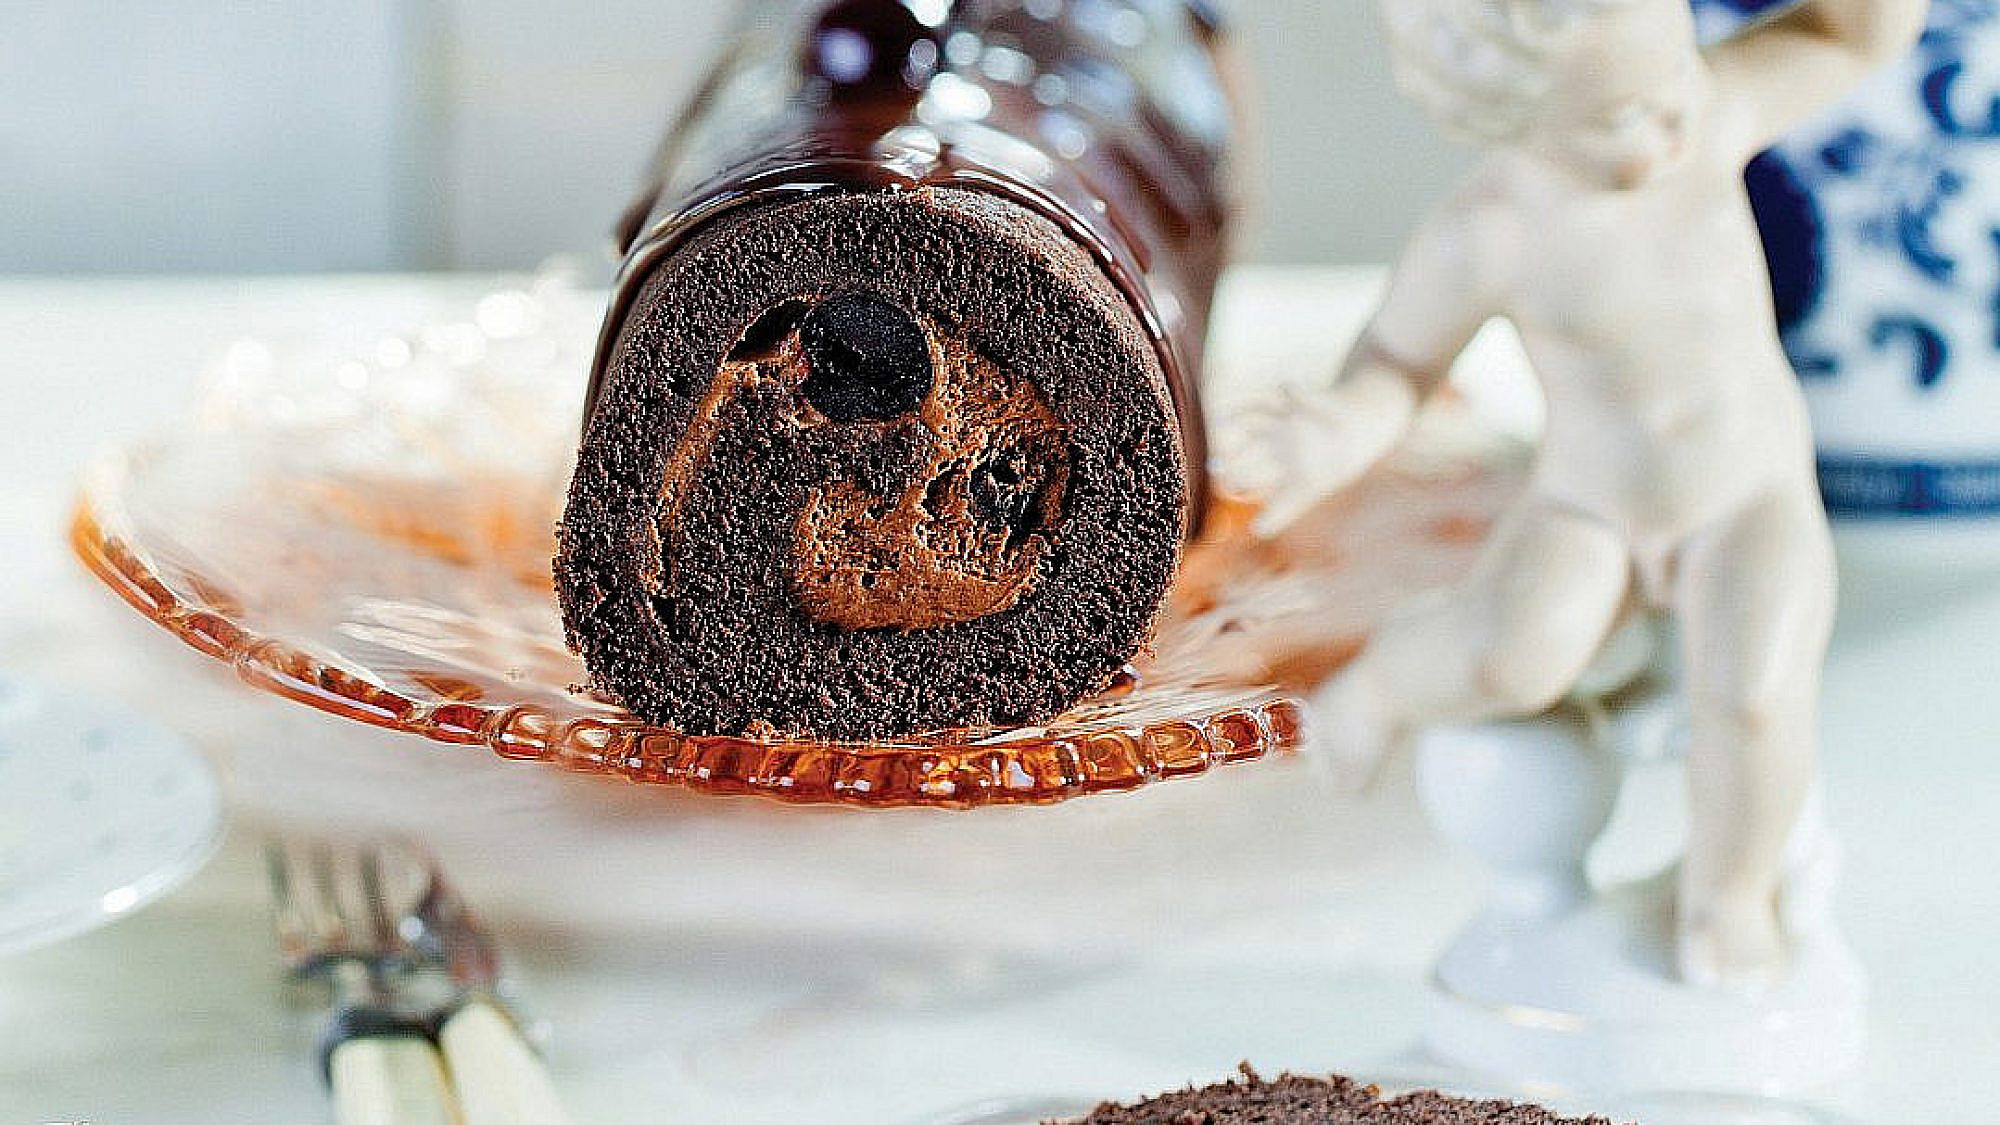 רולדת שוקולד מריר עם דובדבני אמרנה של רות אוליבר | צילום: בועז לביא | סגנון: עמית פרבר